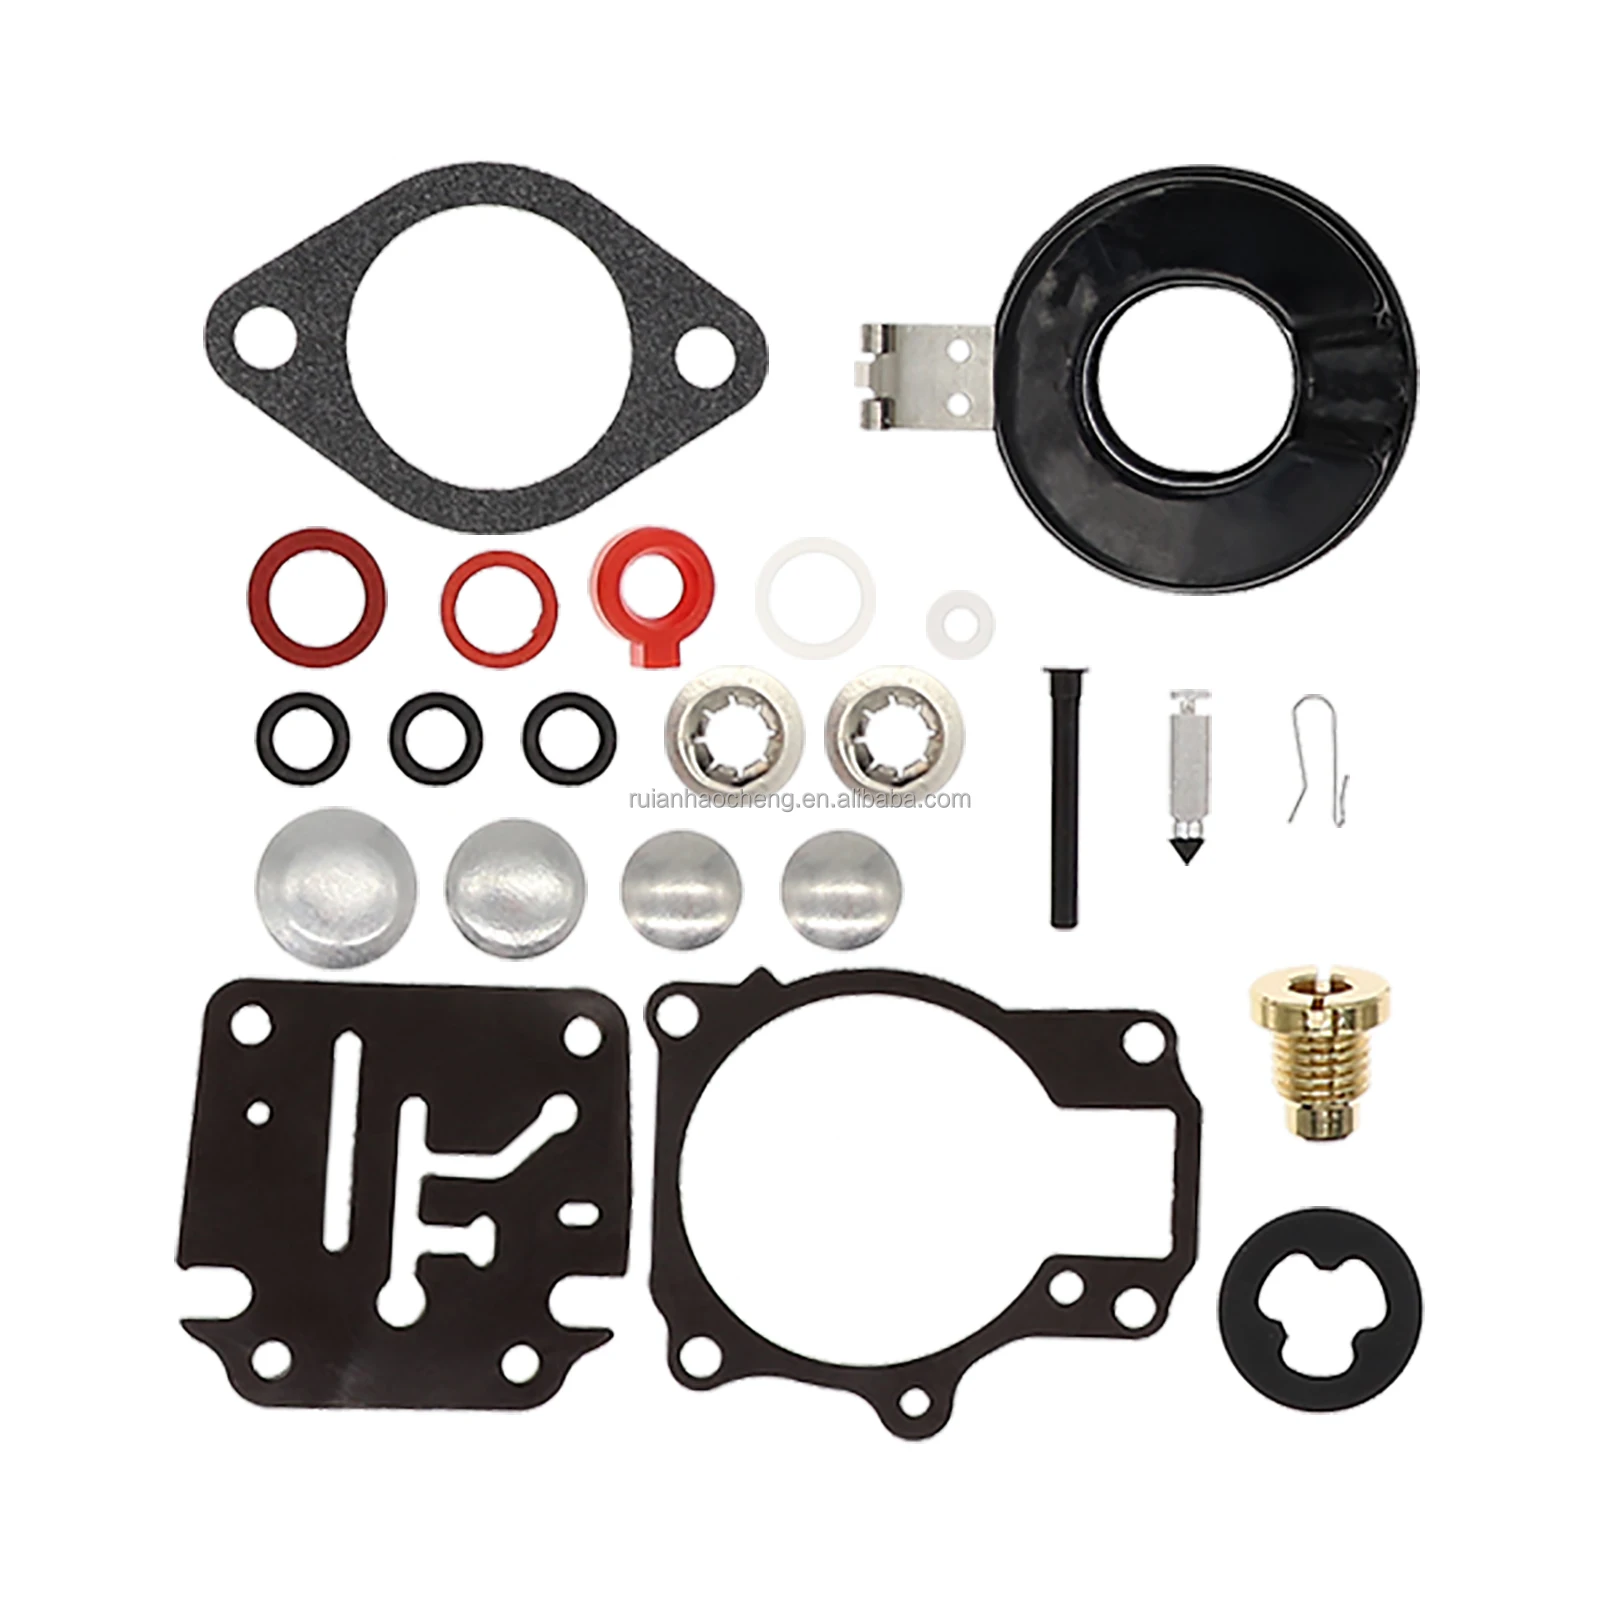 Carb Repair Kit for Johnson/Evinrude Carburetor 396701 20/25/28/30/40/45/48/50